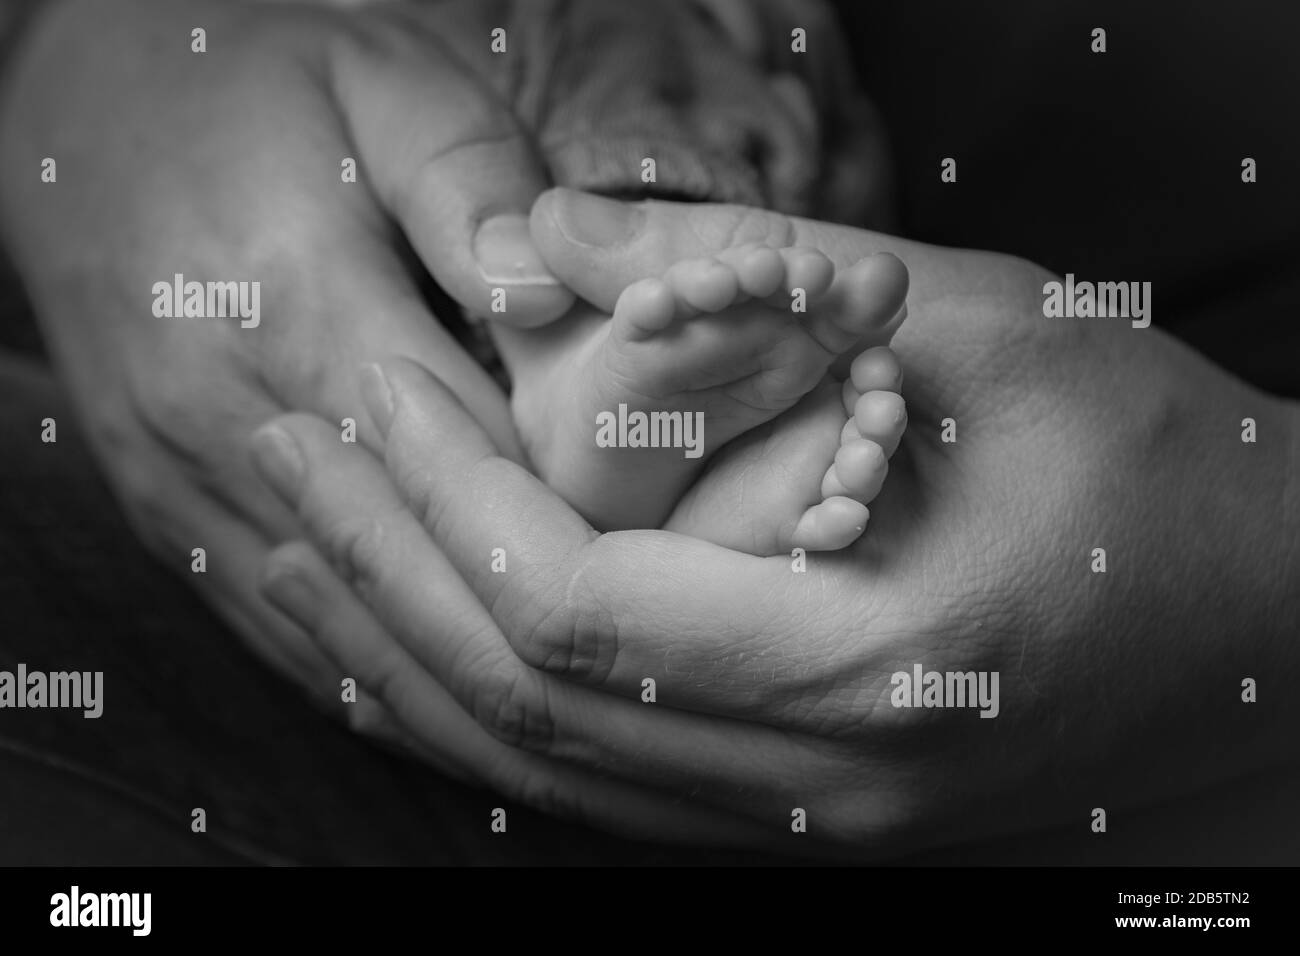 newborn hand and feet Stock Photo